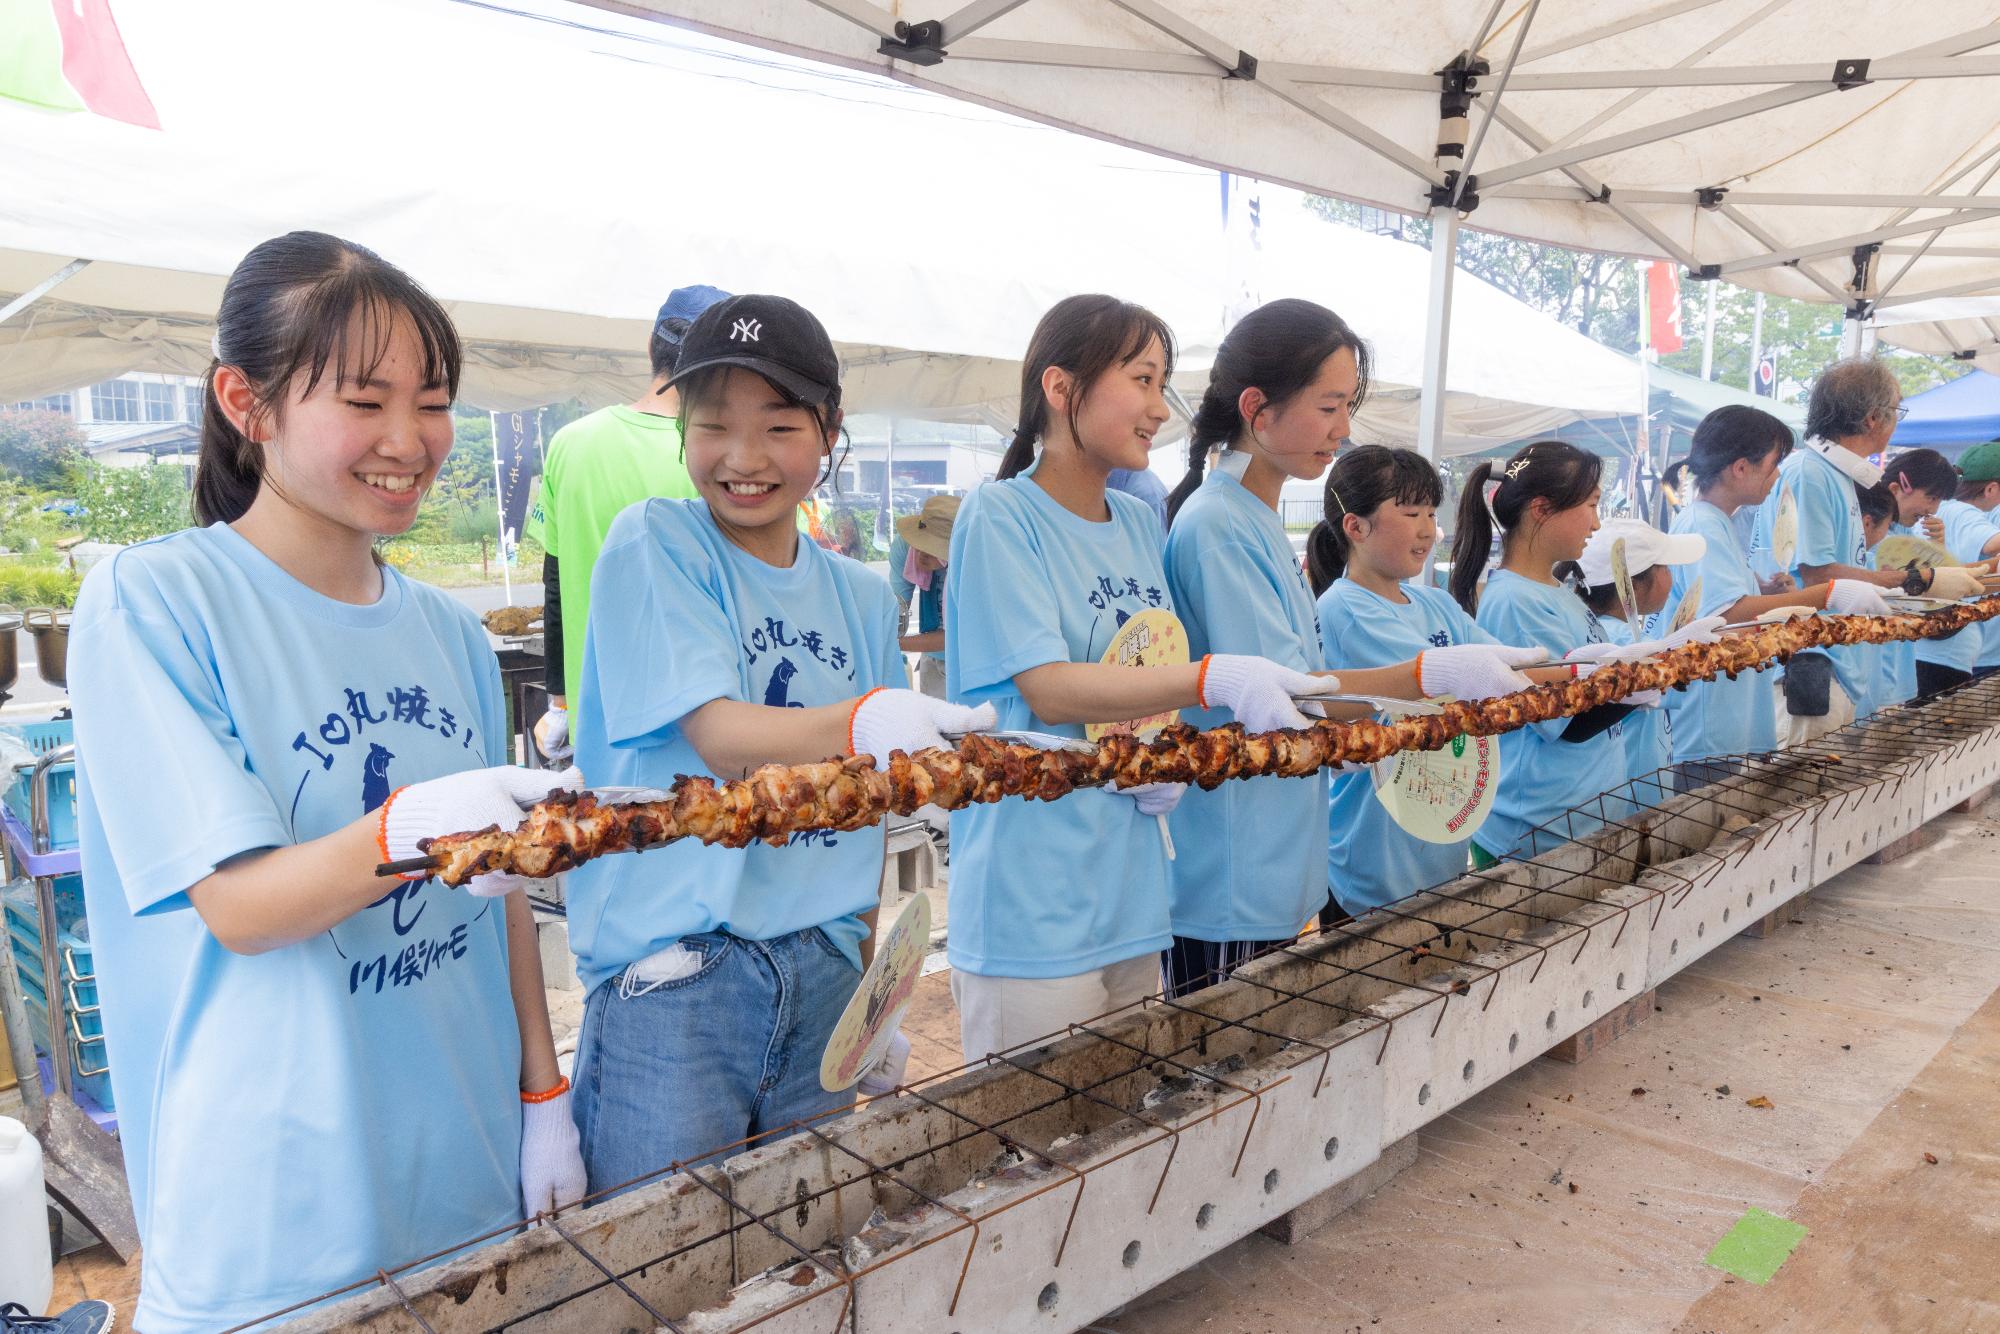 川俣町の一大イベント「かわまたシャモまつり」にて、町内の子供たちが協力して「世界一長い焼き鳥」に挑戦している写真